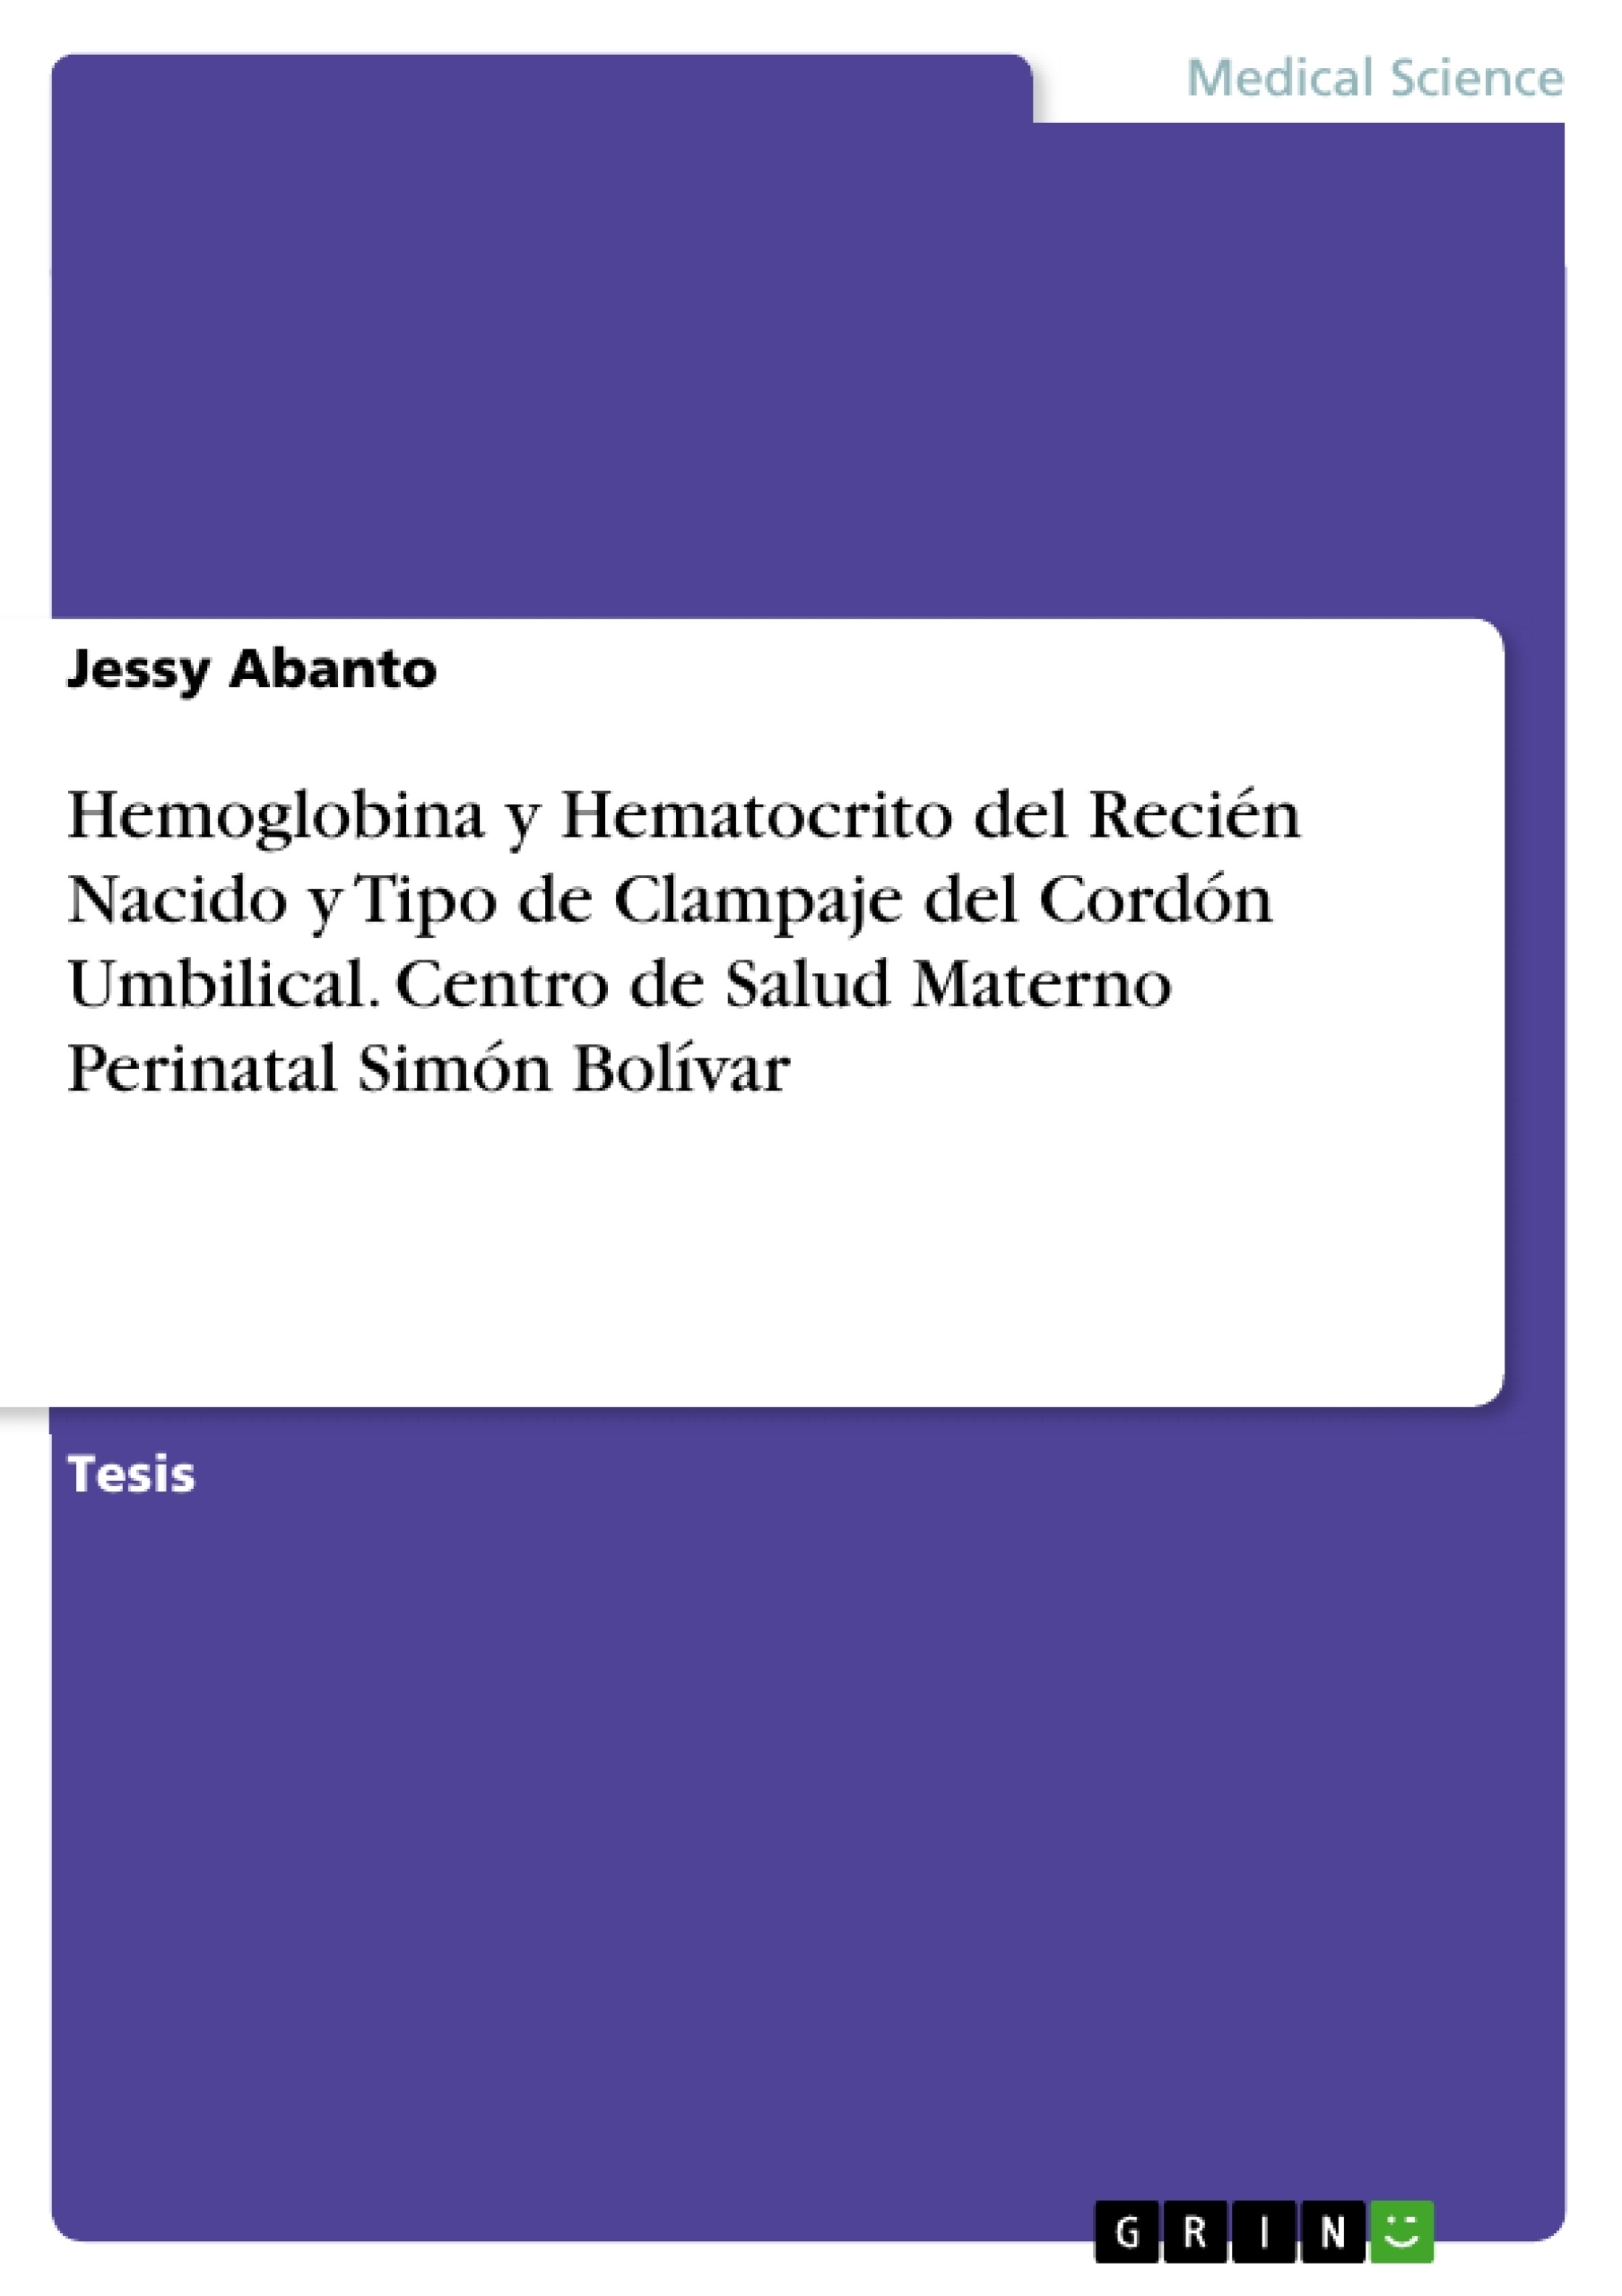 Título: Hemoglobina y Hematocrito del Recién Nacido y Tipo de Clampaje del Cordón Umbilical. Centro de Salud Materno Perinatal Simón Bolívar